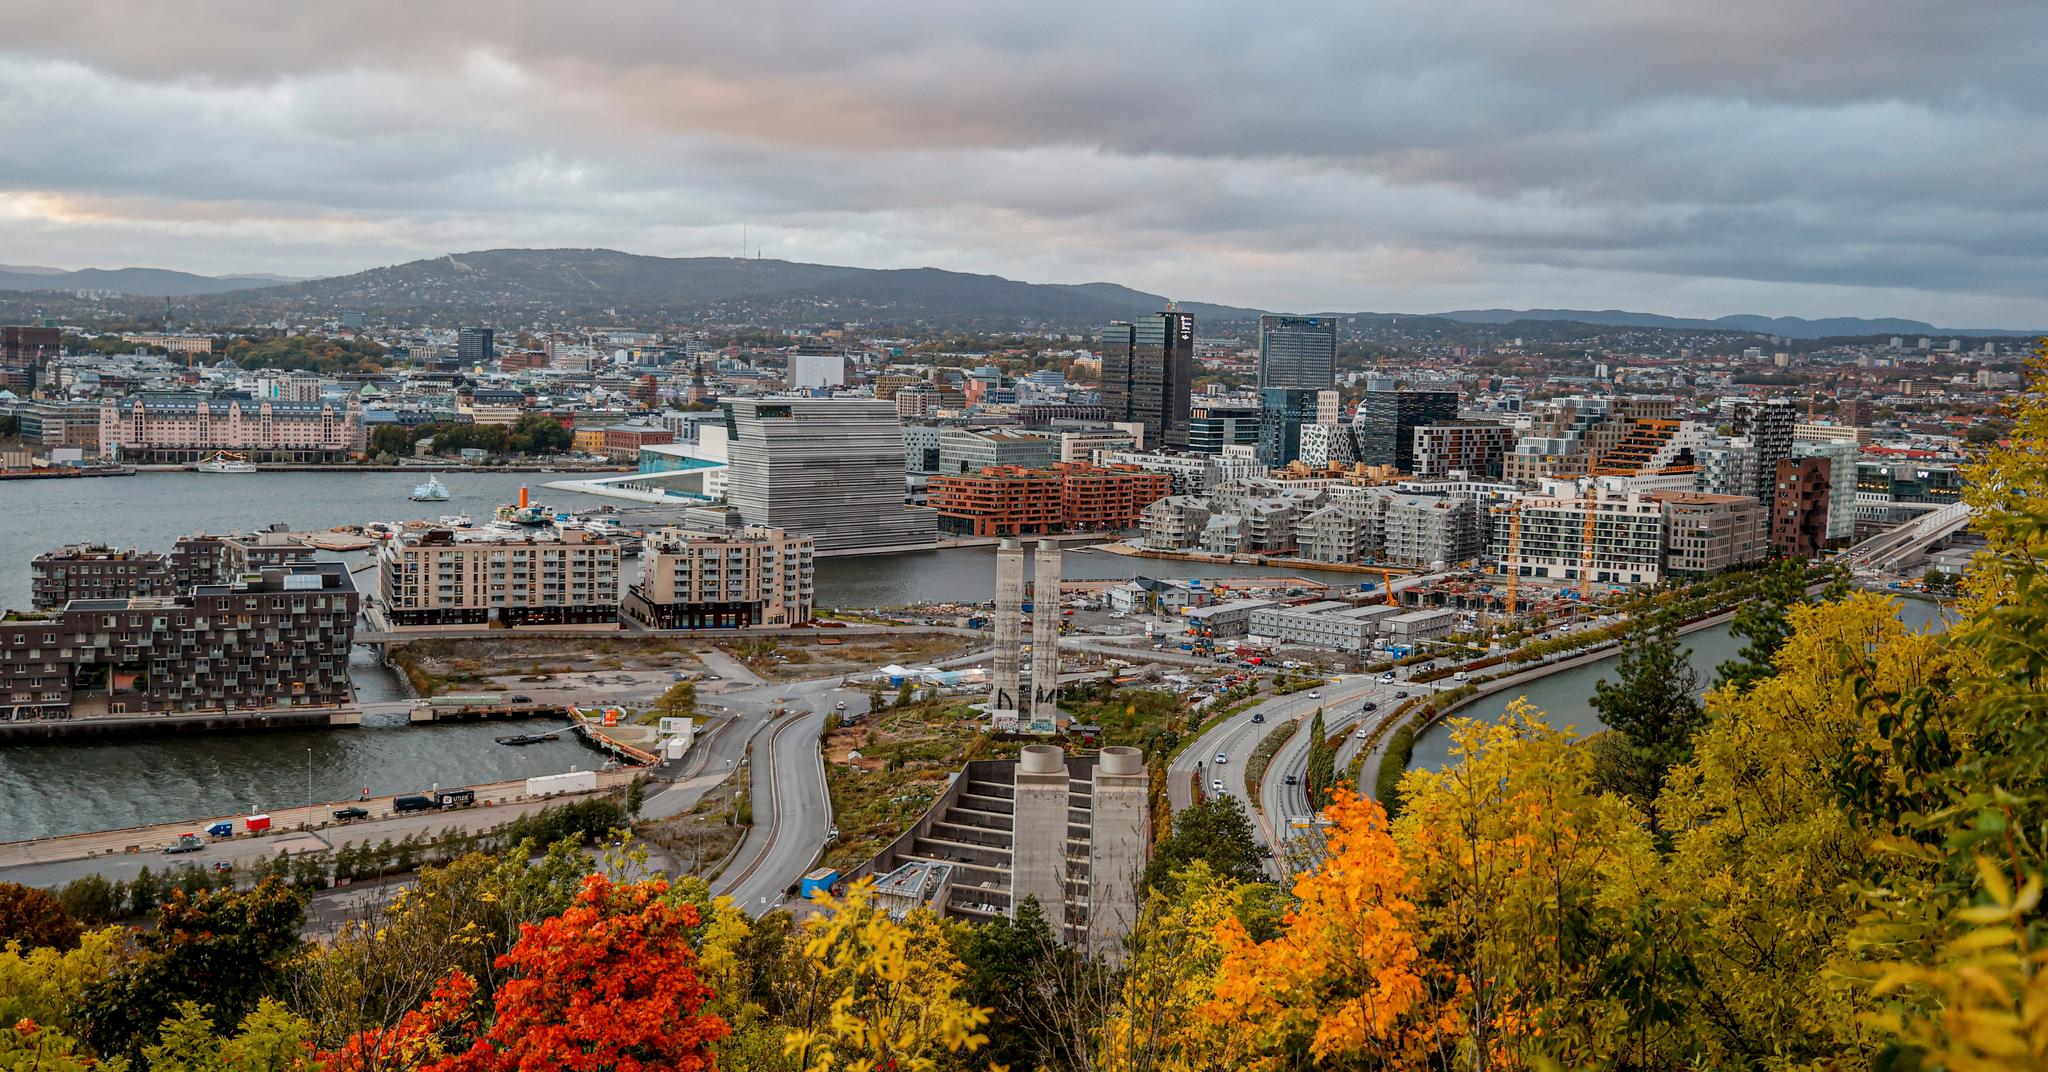 Mens flere byer i Europa har smittekurver som går rett til værs, ser Oslo ut til å flate ut sin. 